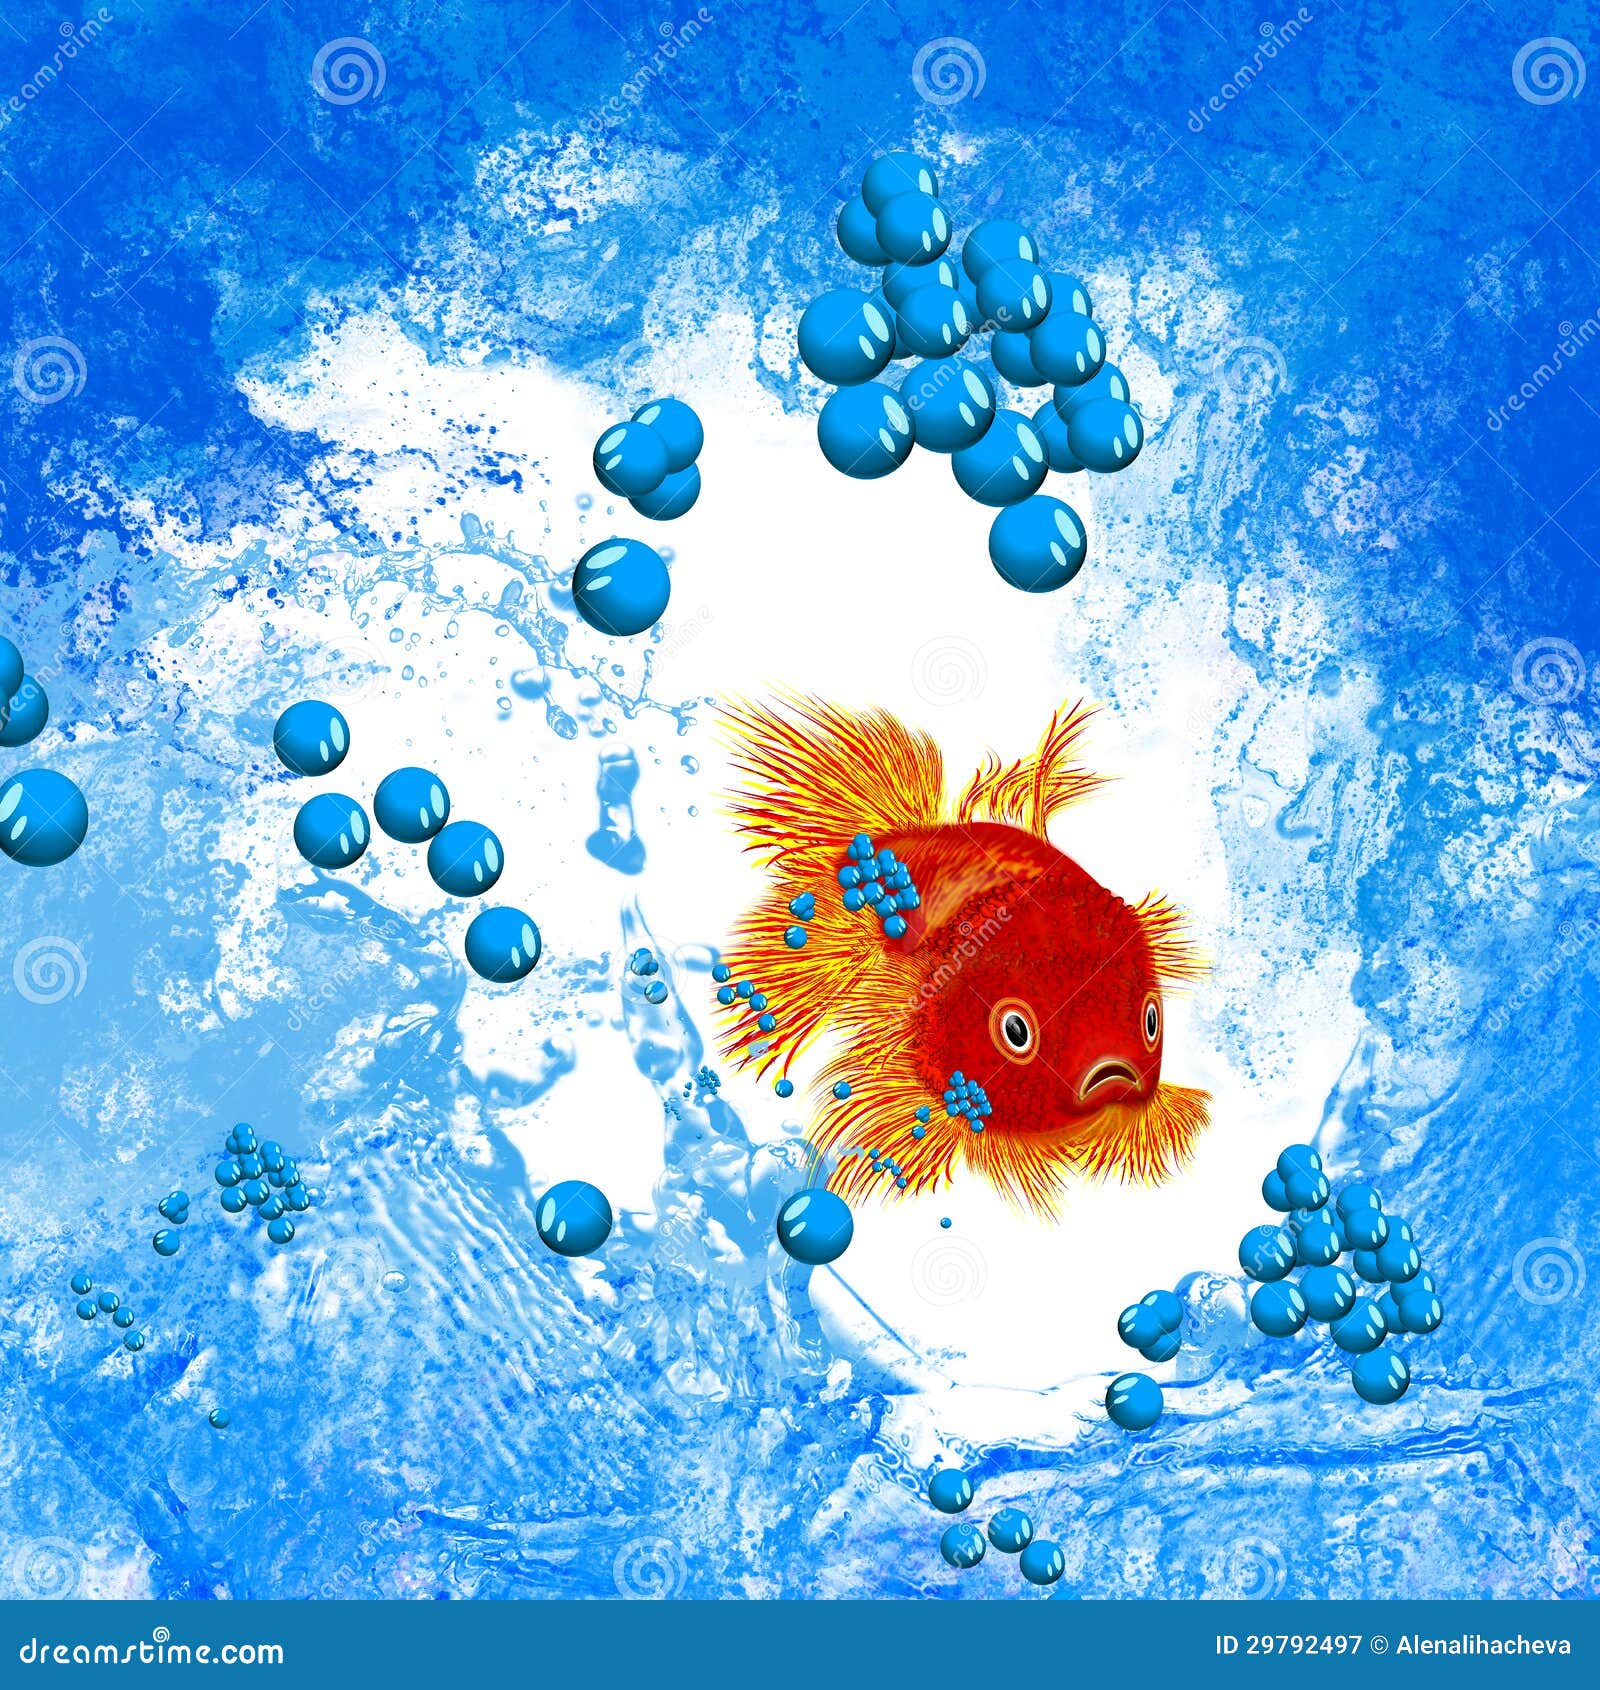 Goldfish stock illustration. Illustration of aqua, liquid - 29792497